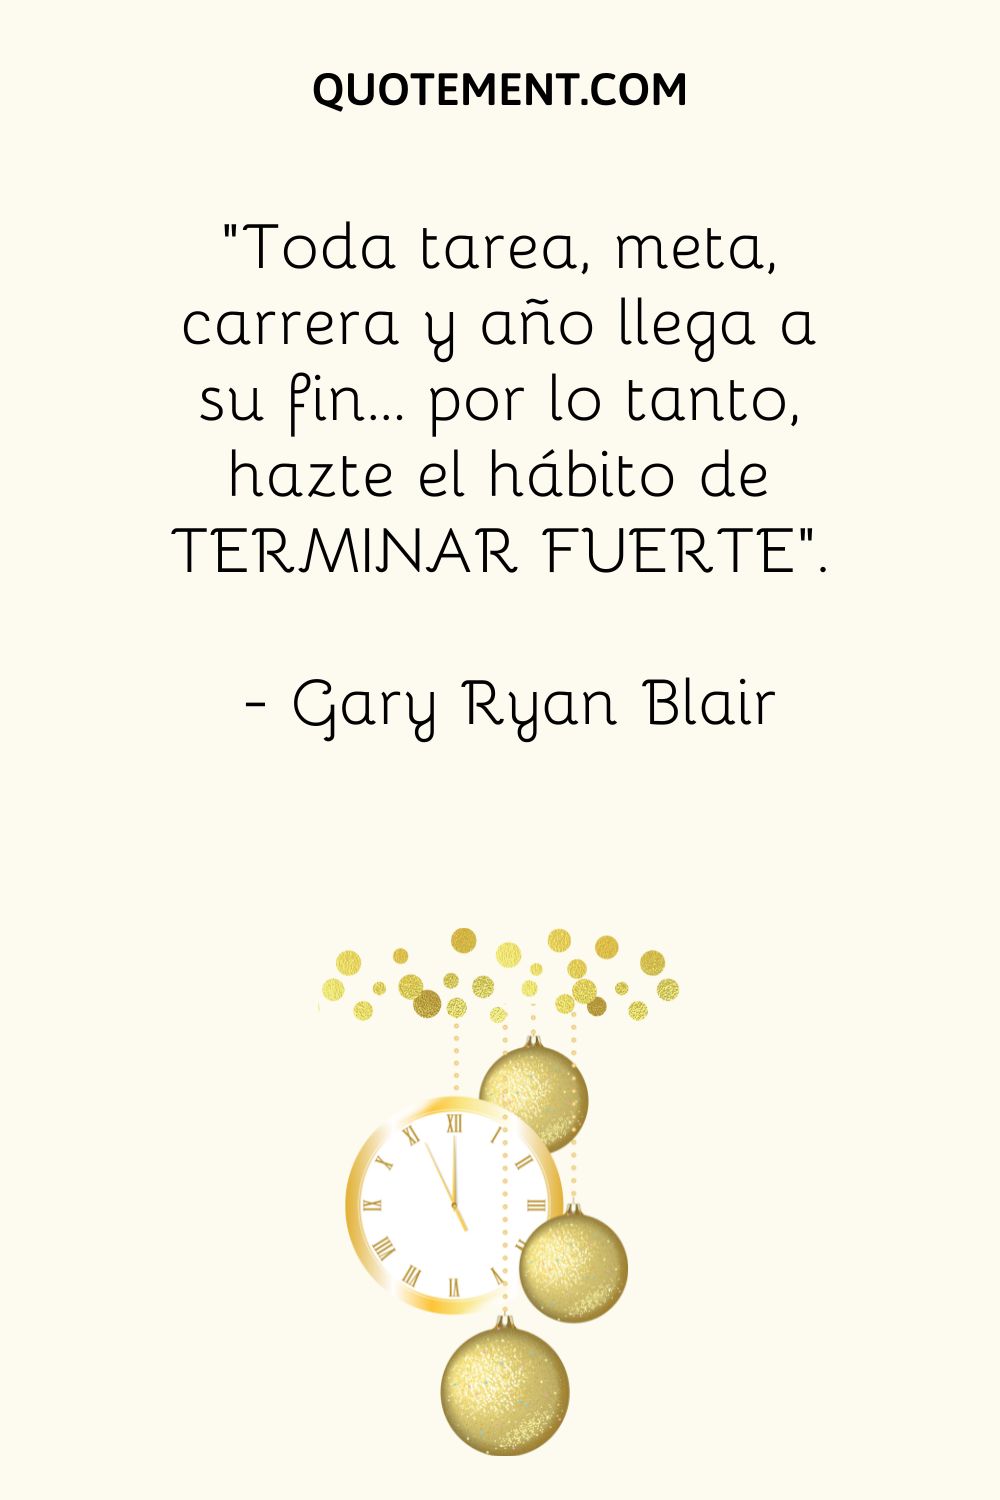 "Toda tarea, meta, carrera y año llega a su fin... por lo tanto, hazte el hábito de TERMINAR FUERTE". - Gary Ryan Blair